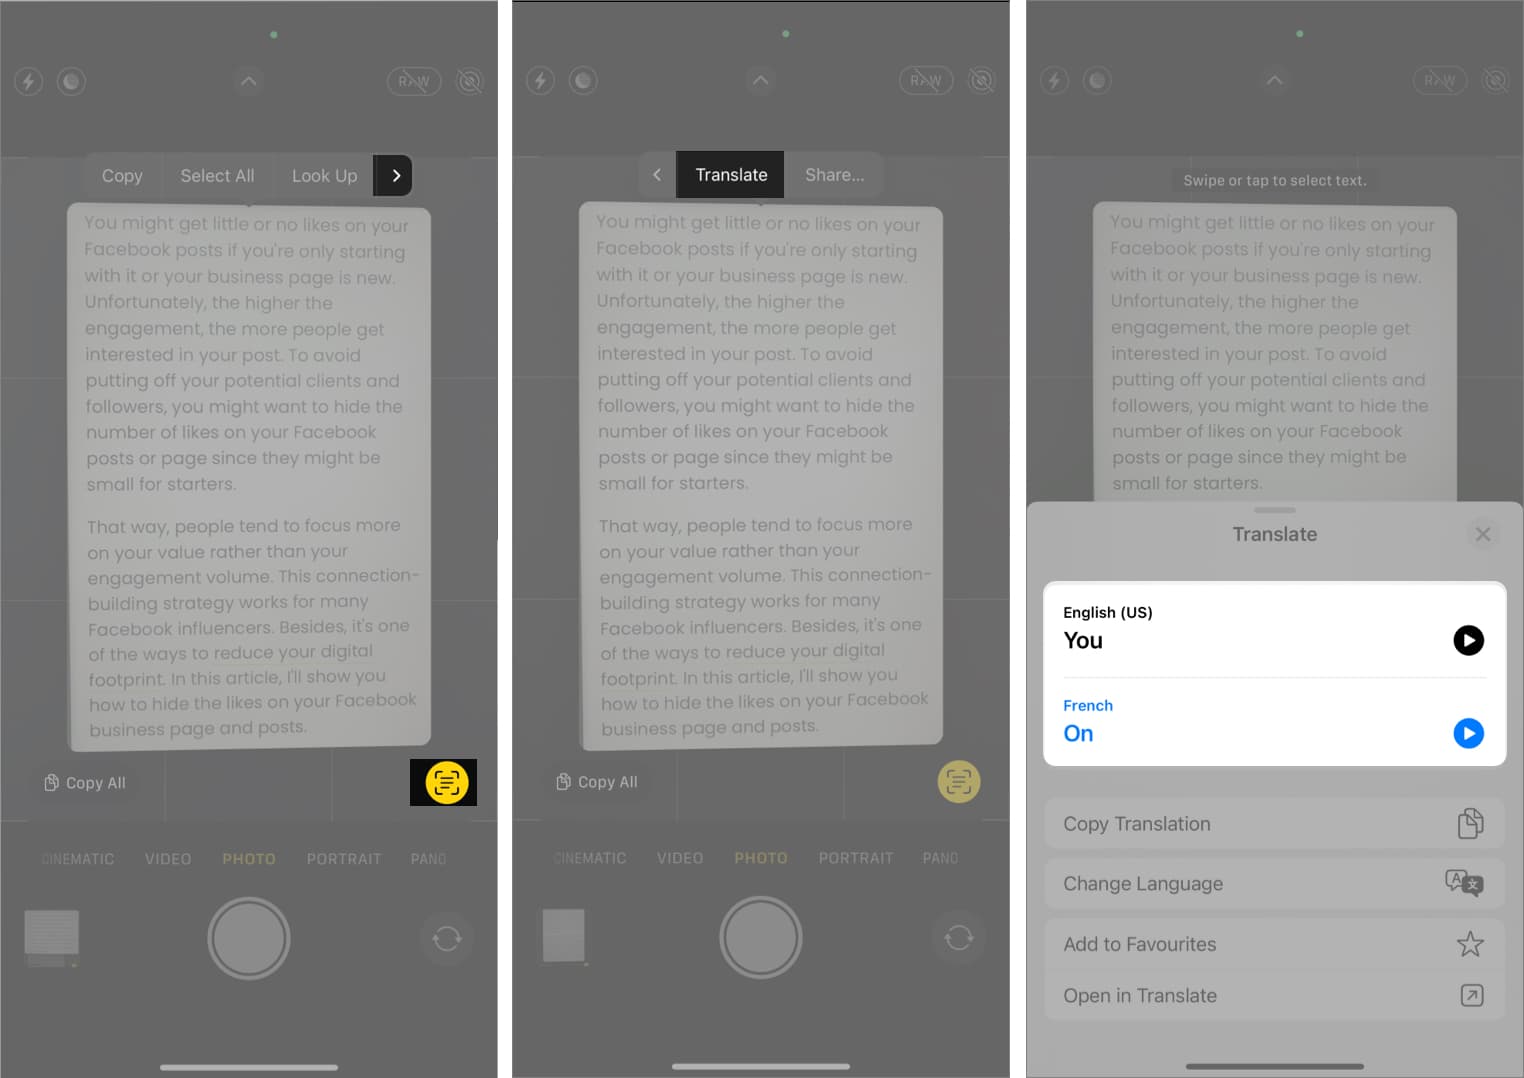 Cara menterjemah teks dalam apl Kamera pada iPhone